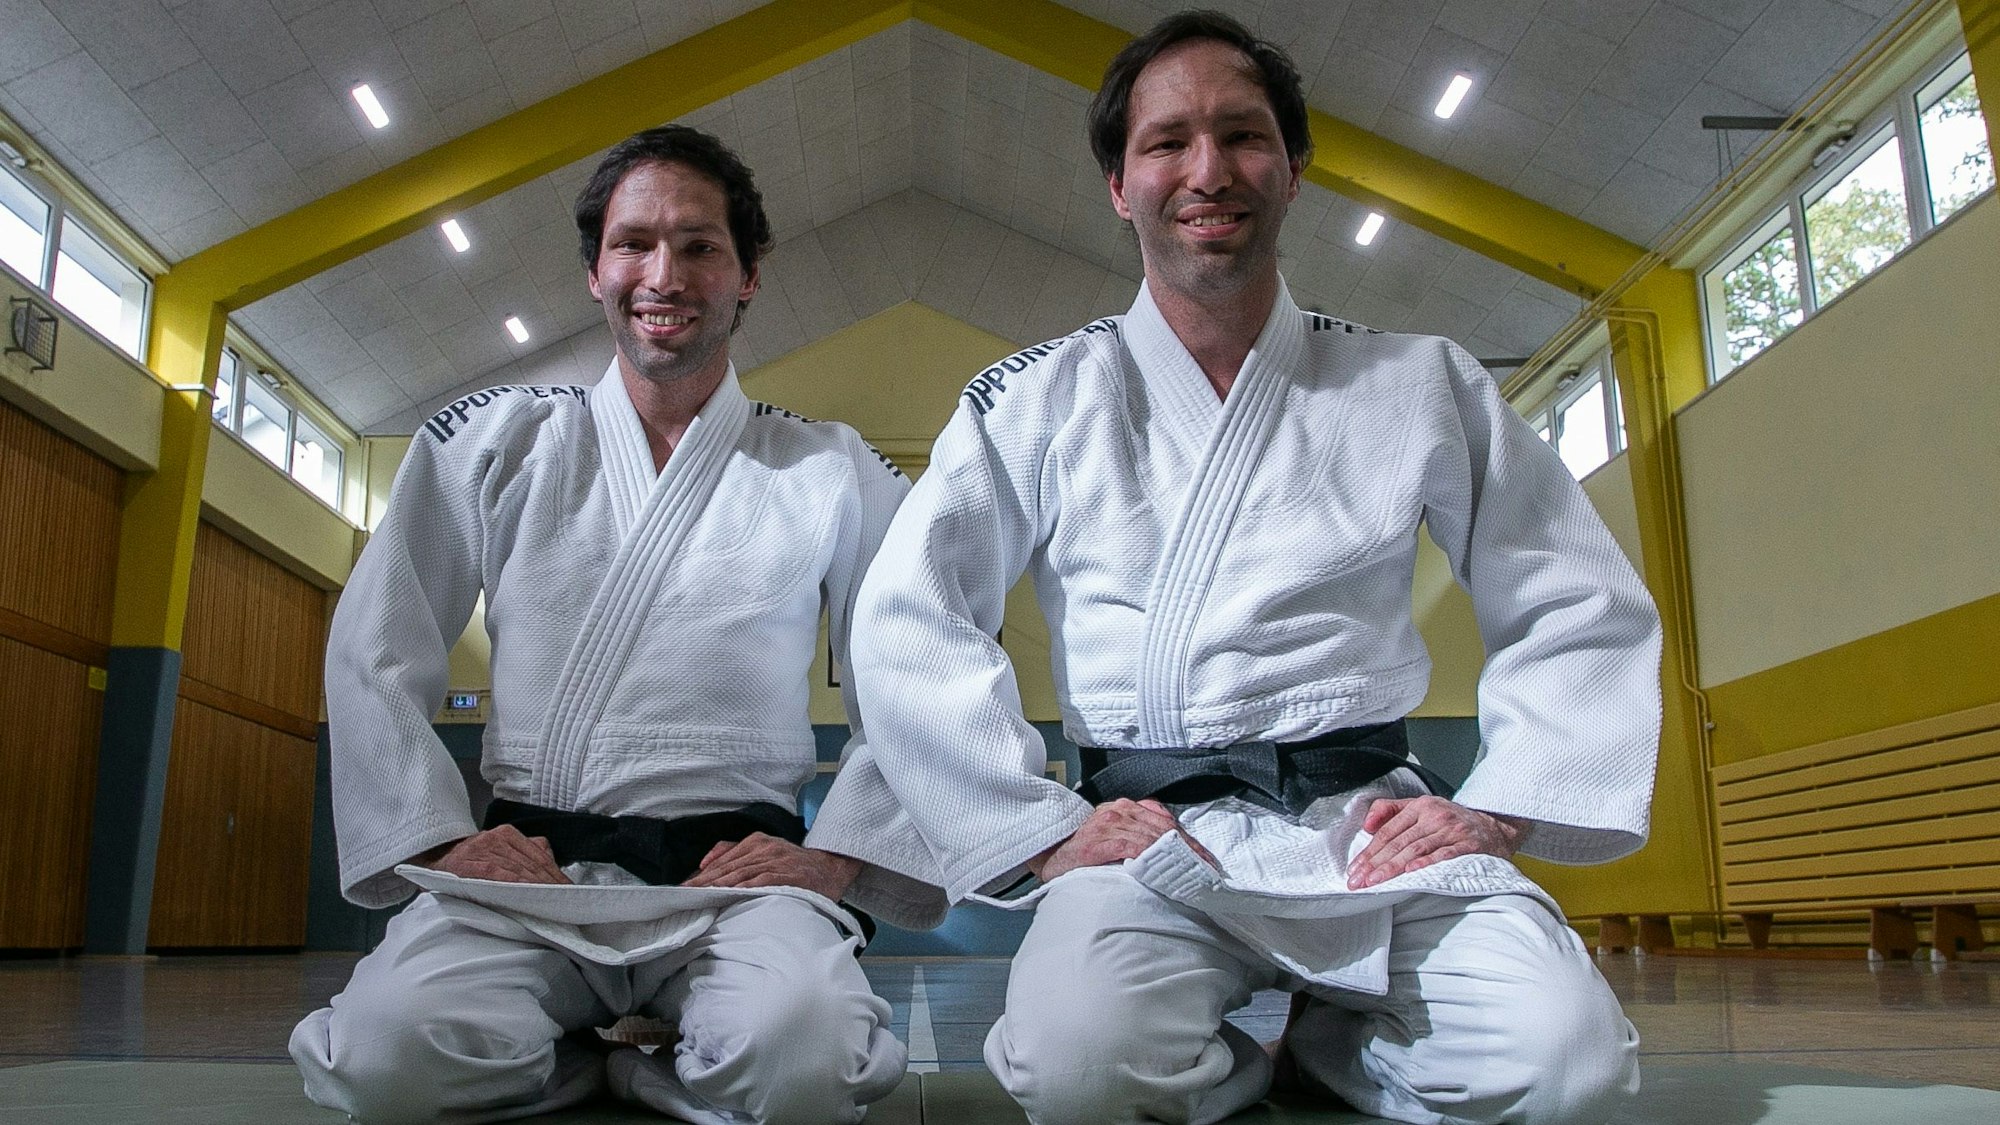 Zu sehen sind Zwillinge im Judo-Anzug.